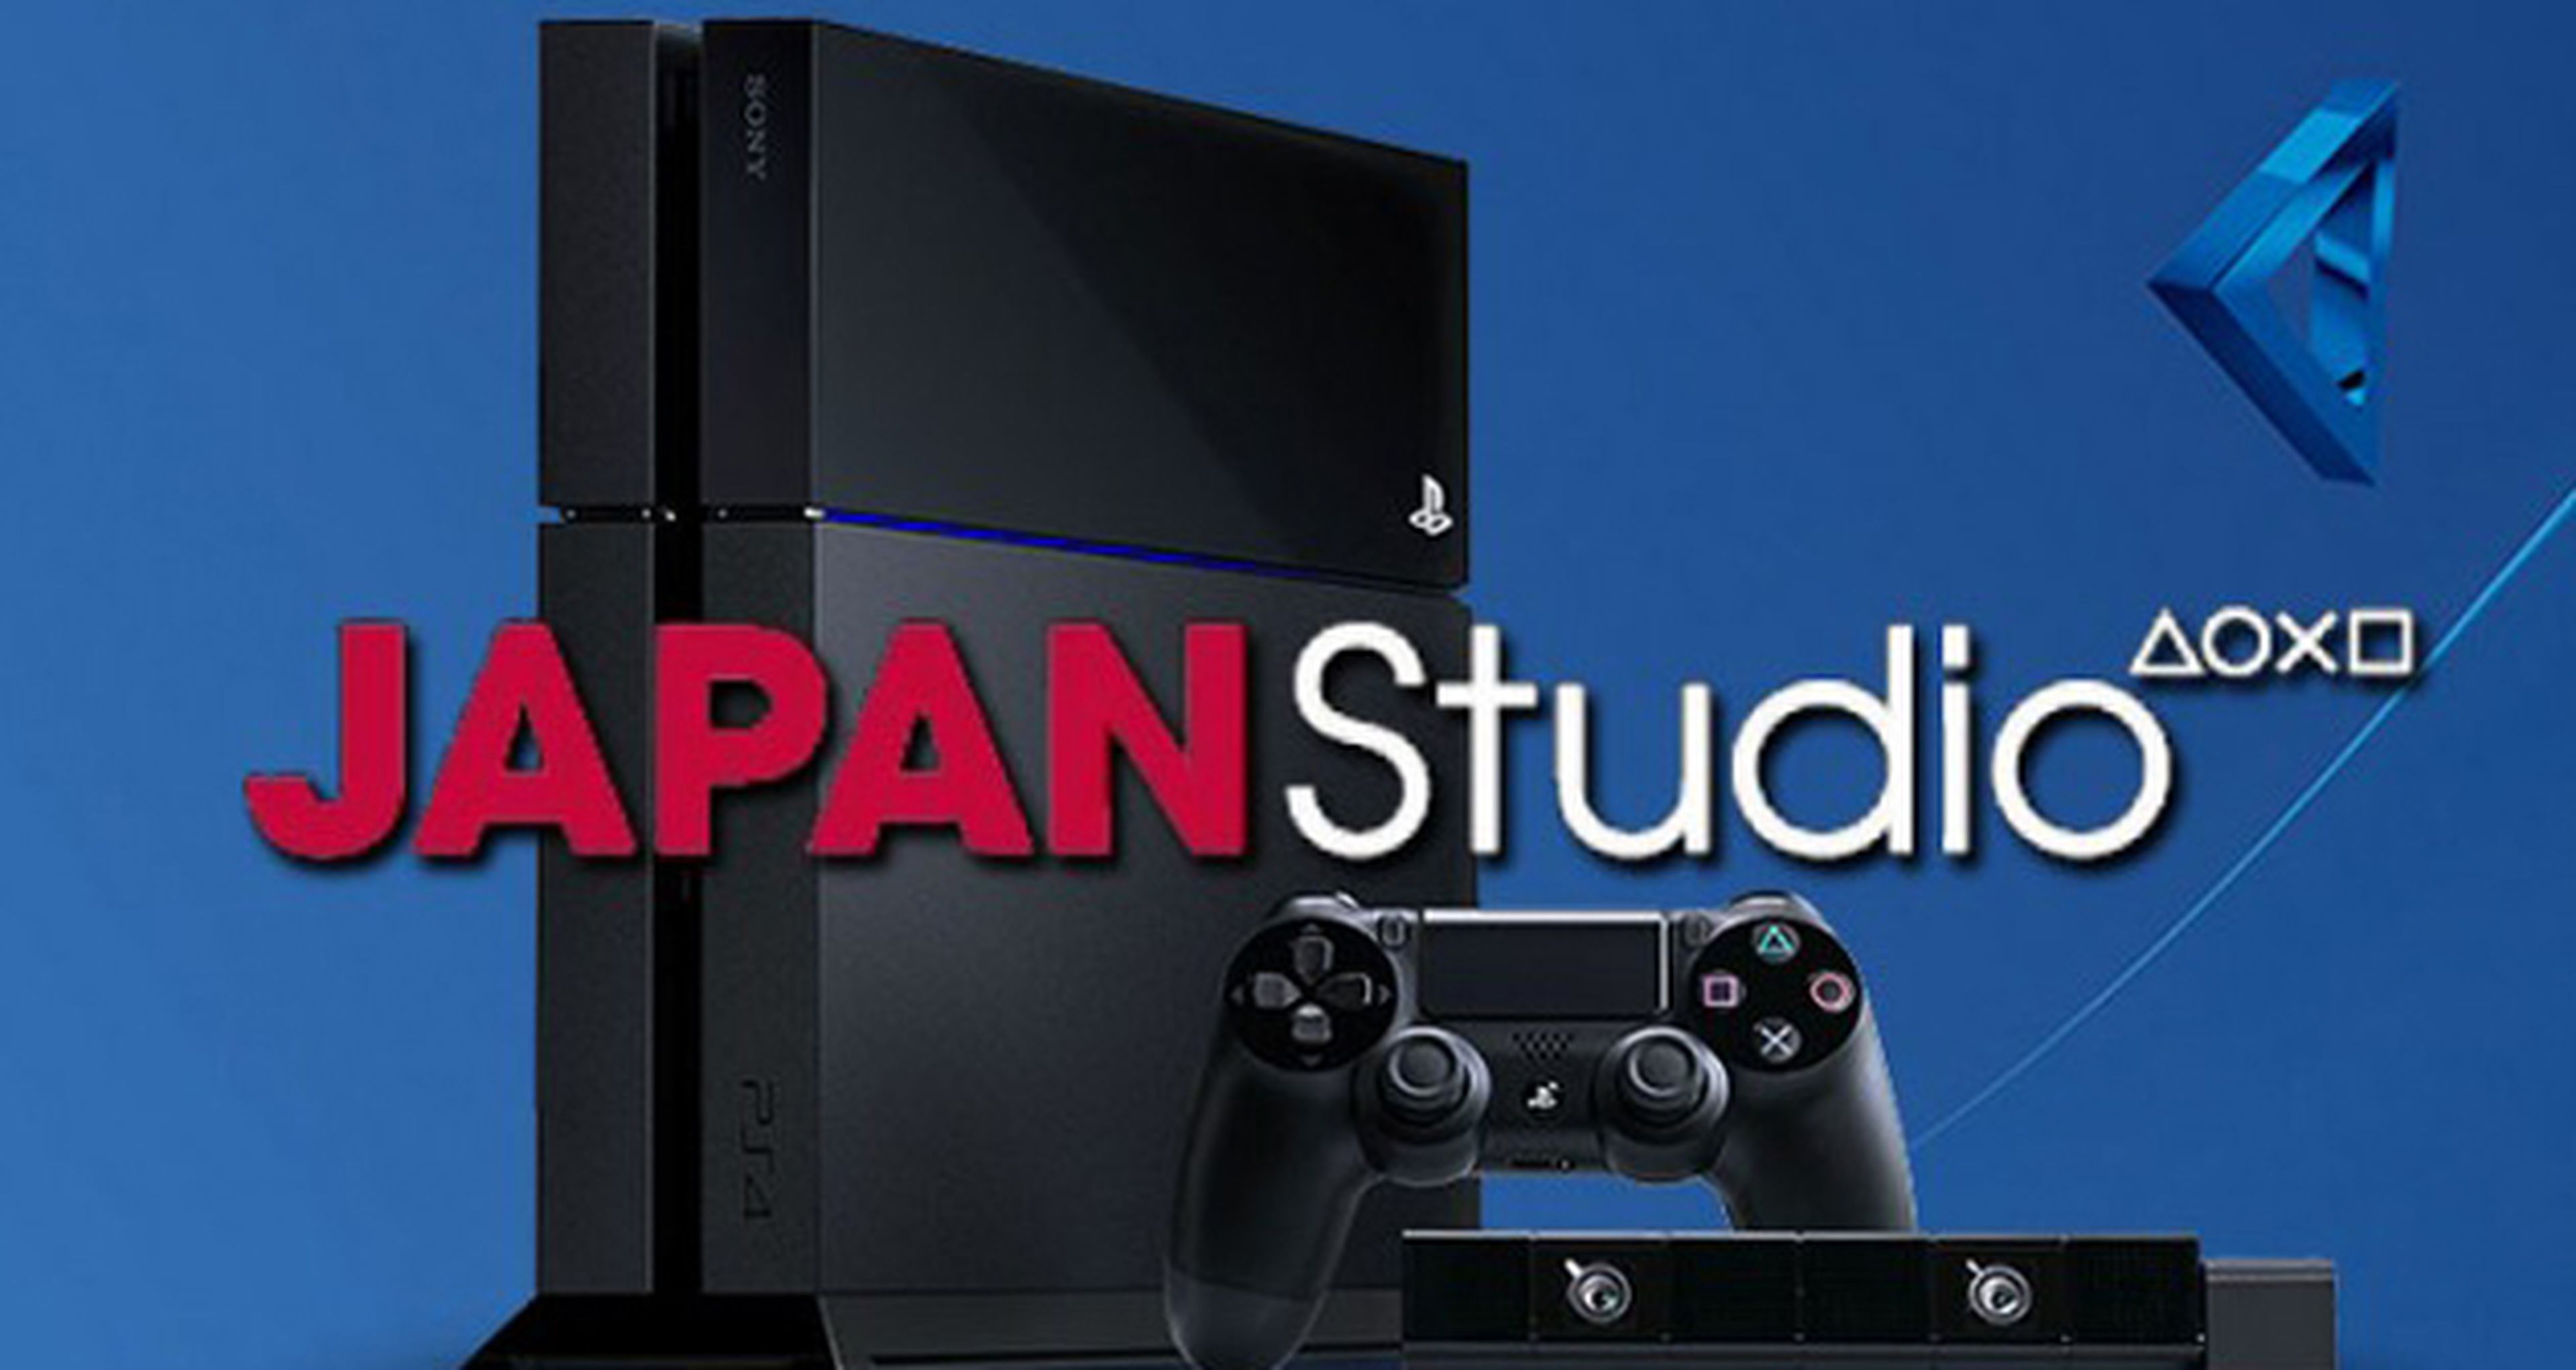 Sony Japan Studio trabaja en un título para PS4